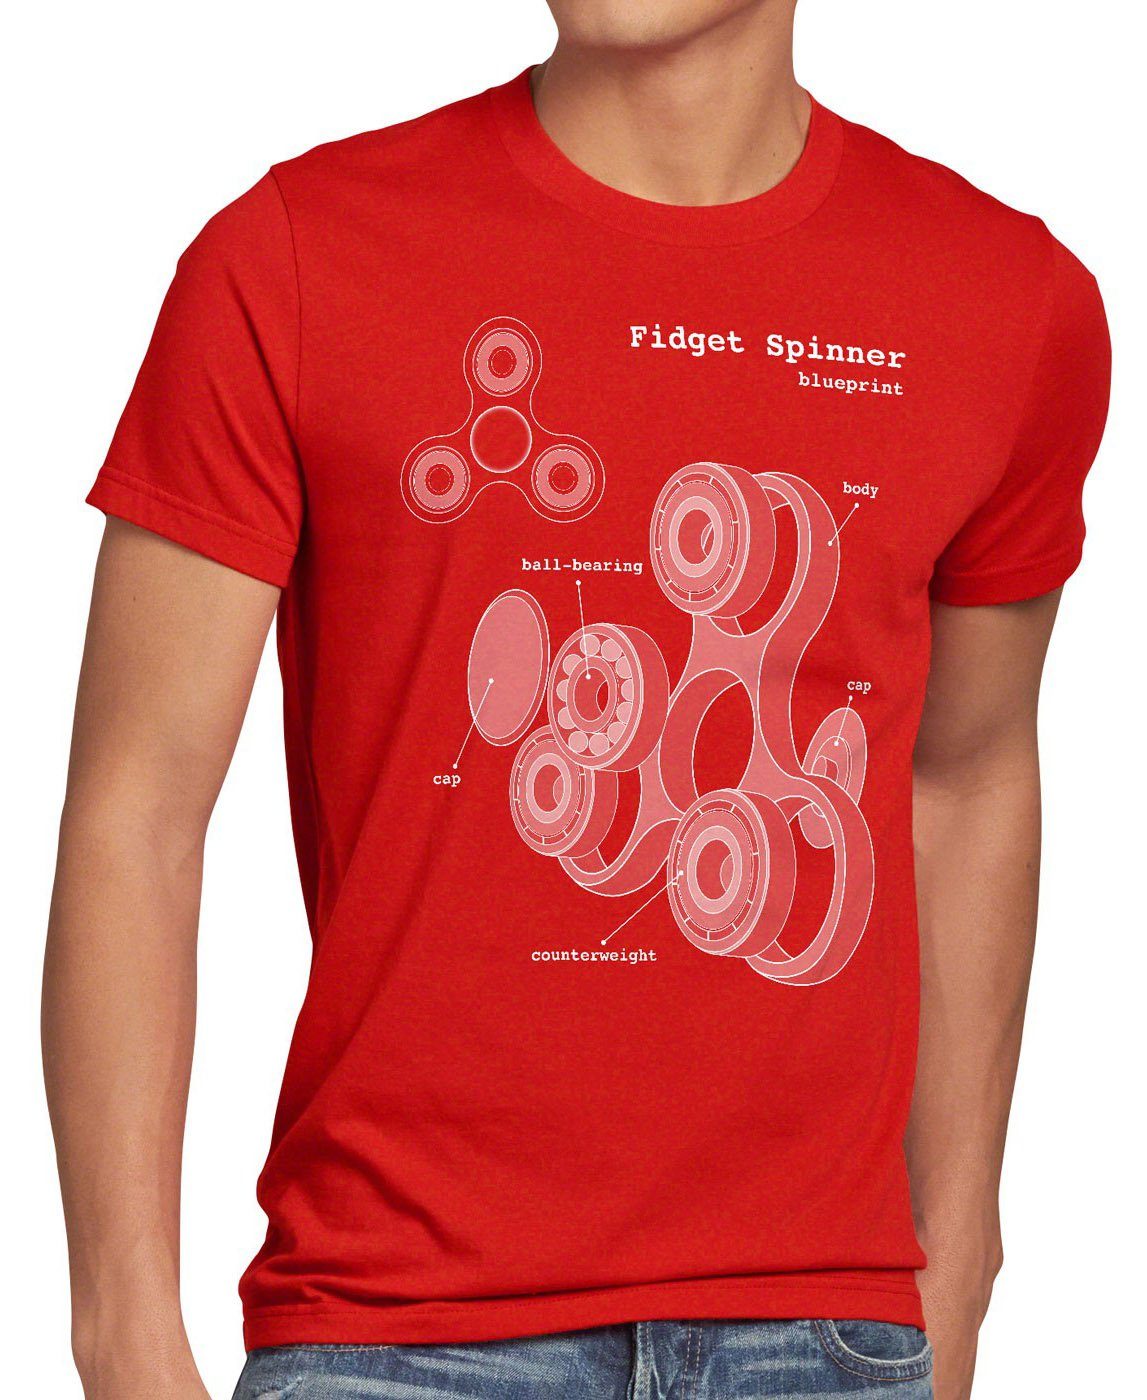 rot Spielzeug Finger Herren Spinner Toy style3 T-Shirt Print-Shirt Hand Blaupause Fidget Handspinner